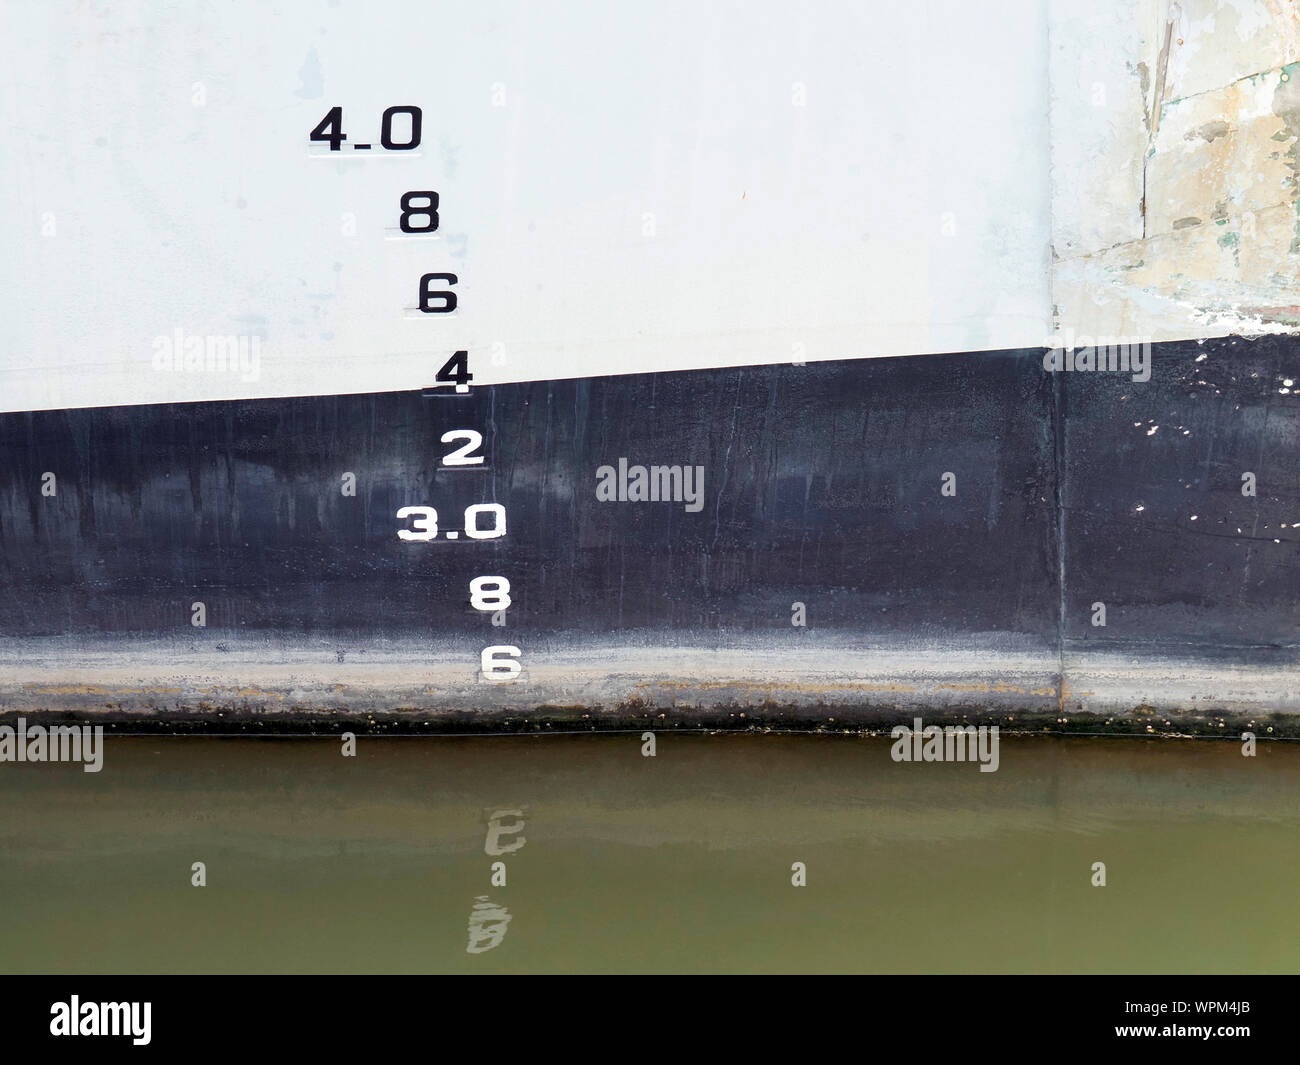 Línea de flotación números o marcas de calado sobre el casco de un buscaminas para mostrar el proyecto del buque en diversas condiciones de carga y de agua. Foto de stock